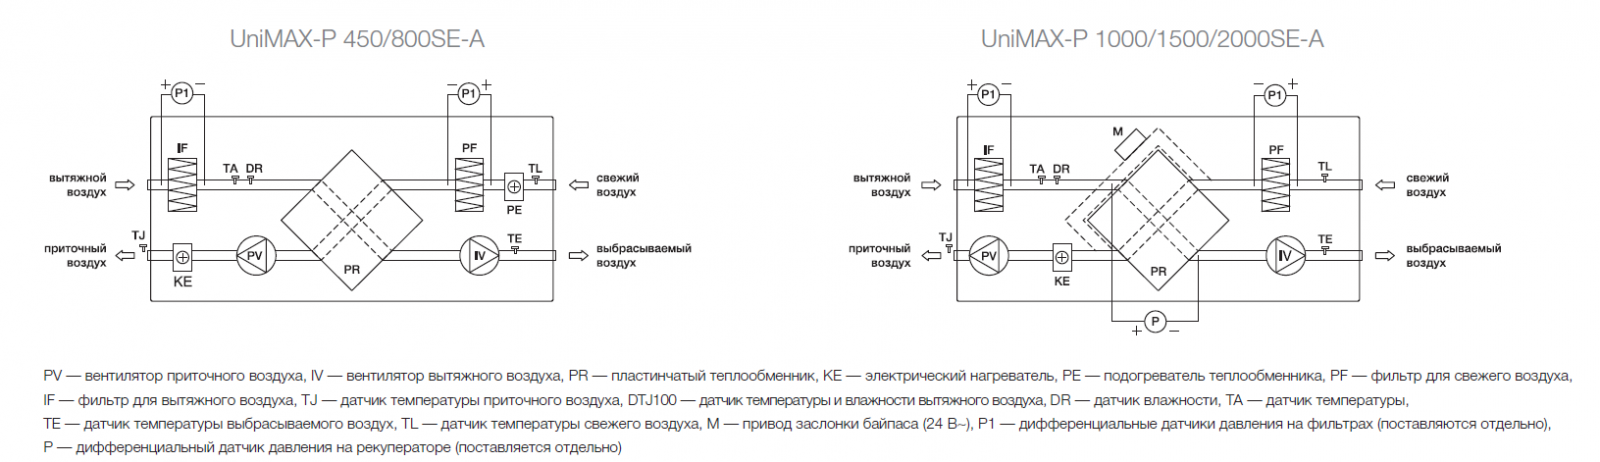 Принципиальная схема установки Shuft Unimax-P SE